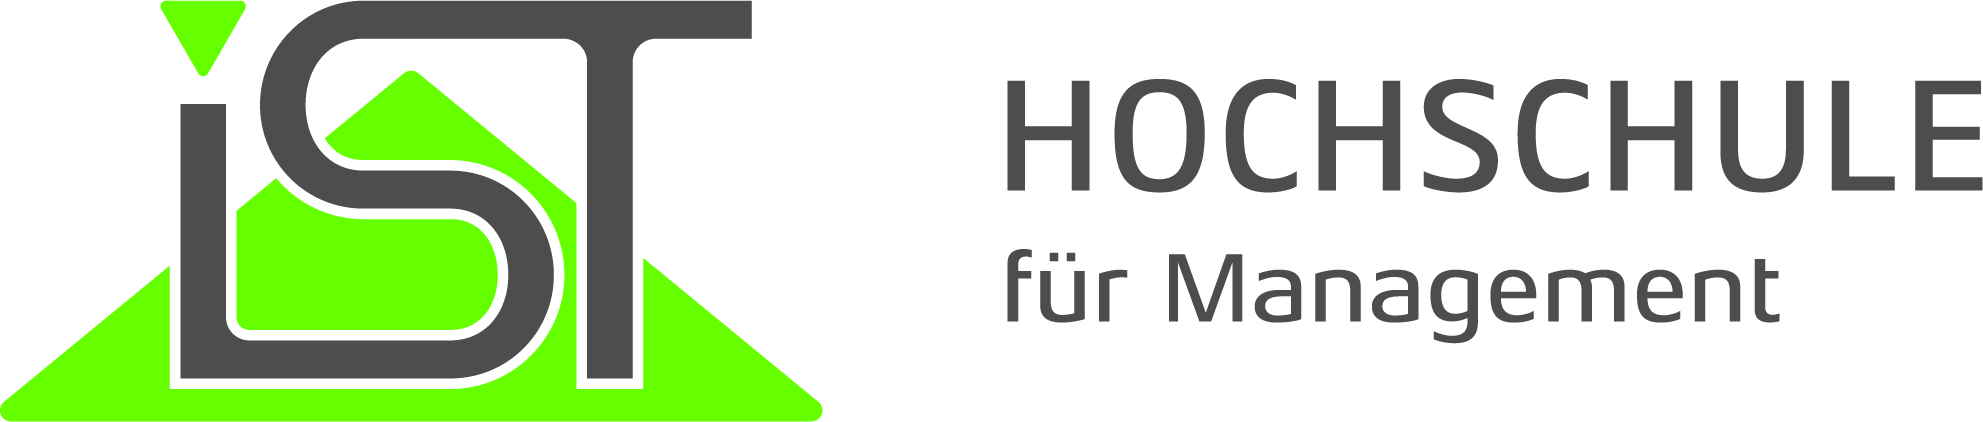 IST-Hochschule für Management GmbH Logo